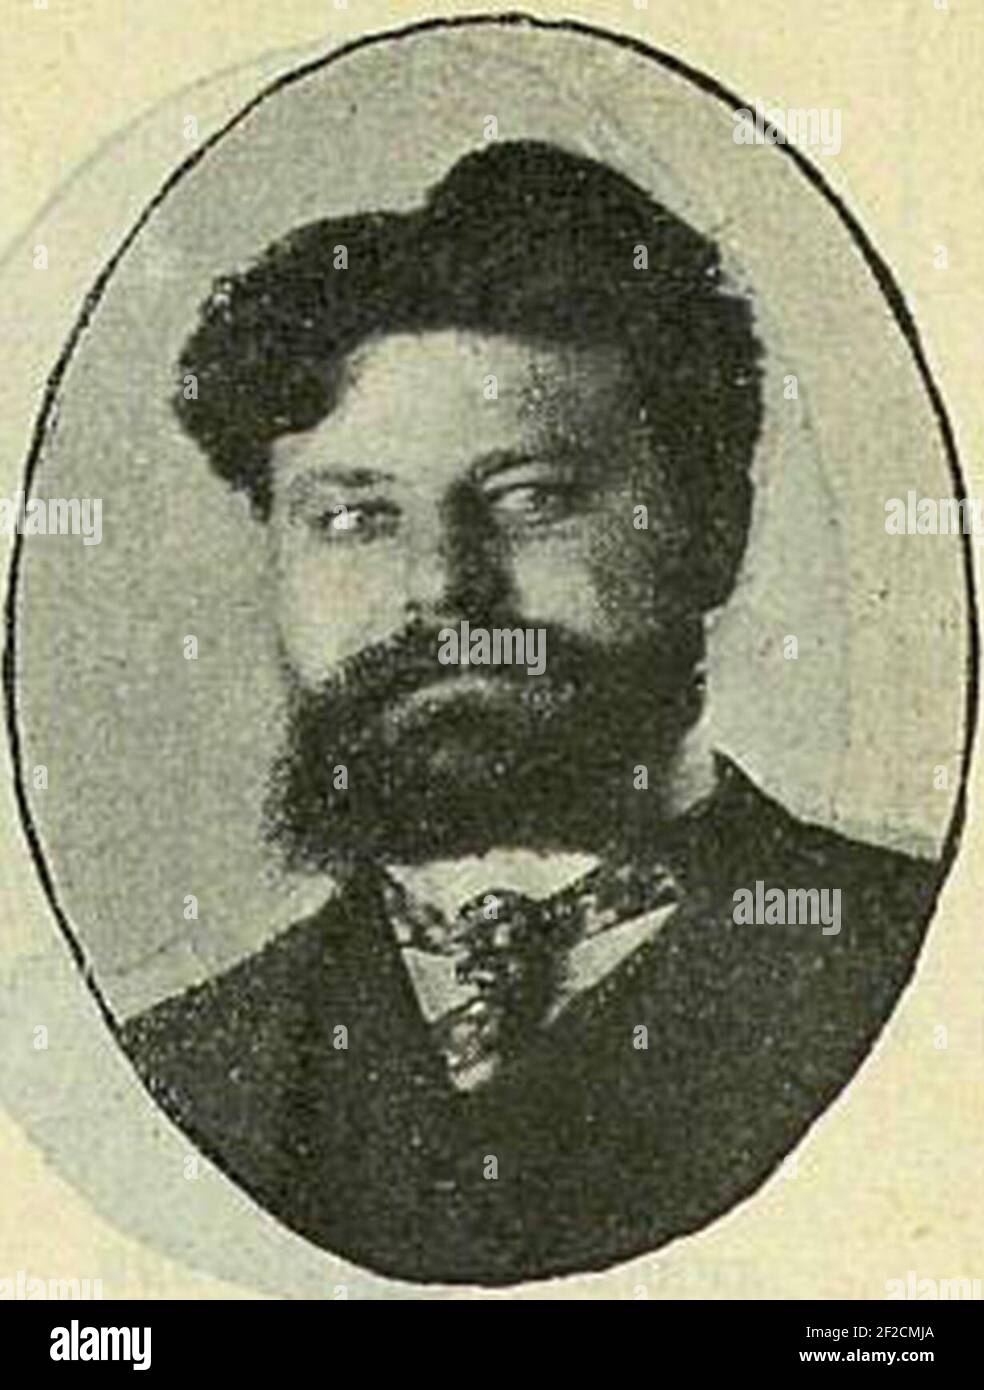 Т п попов. М.В. Лентовский (1843-1906).